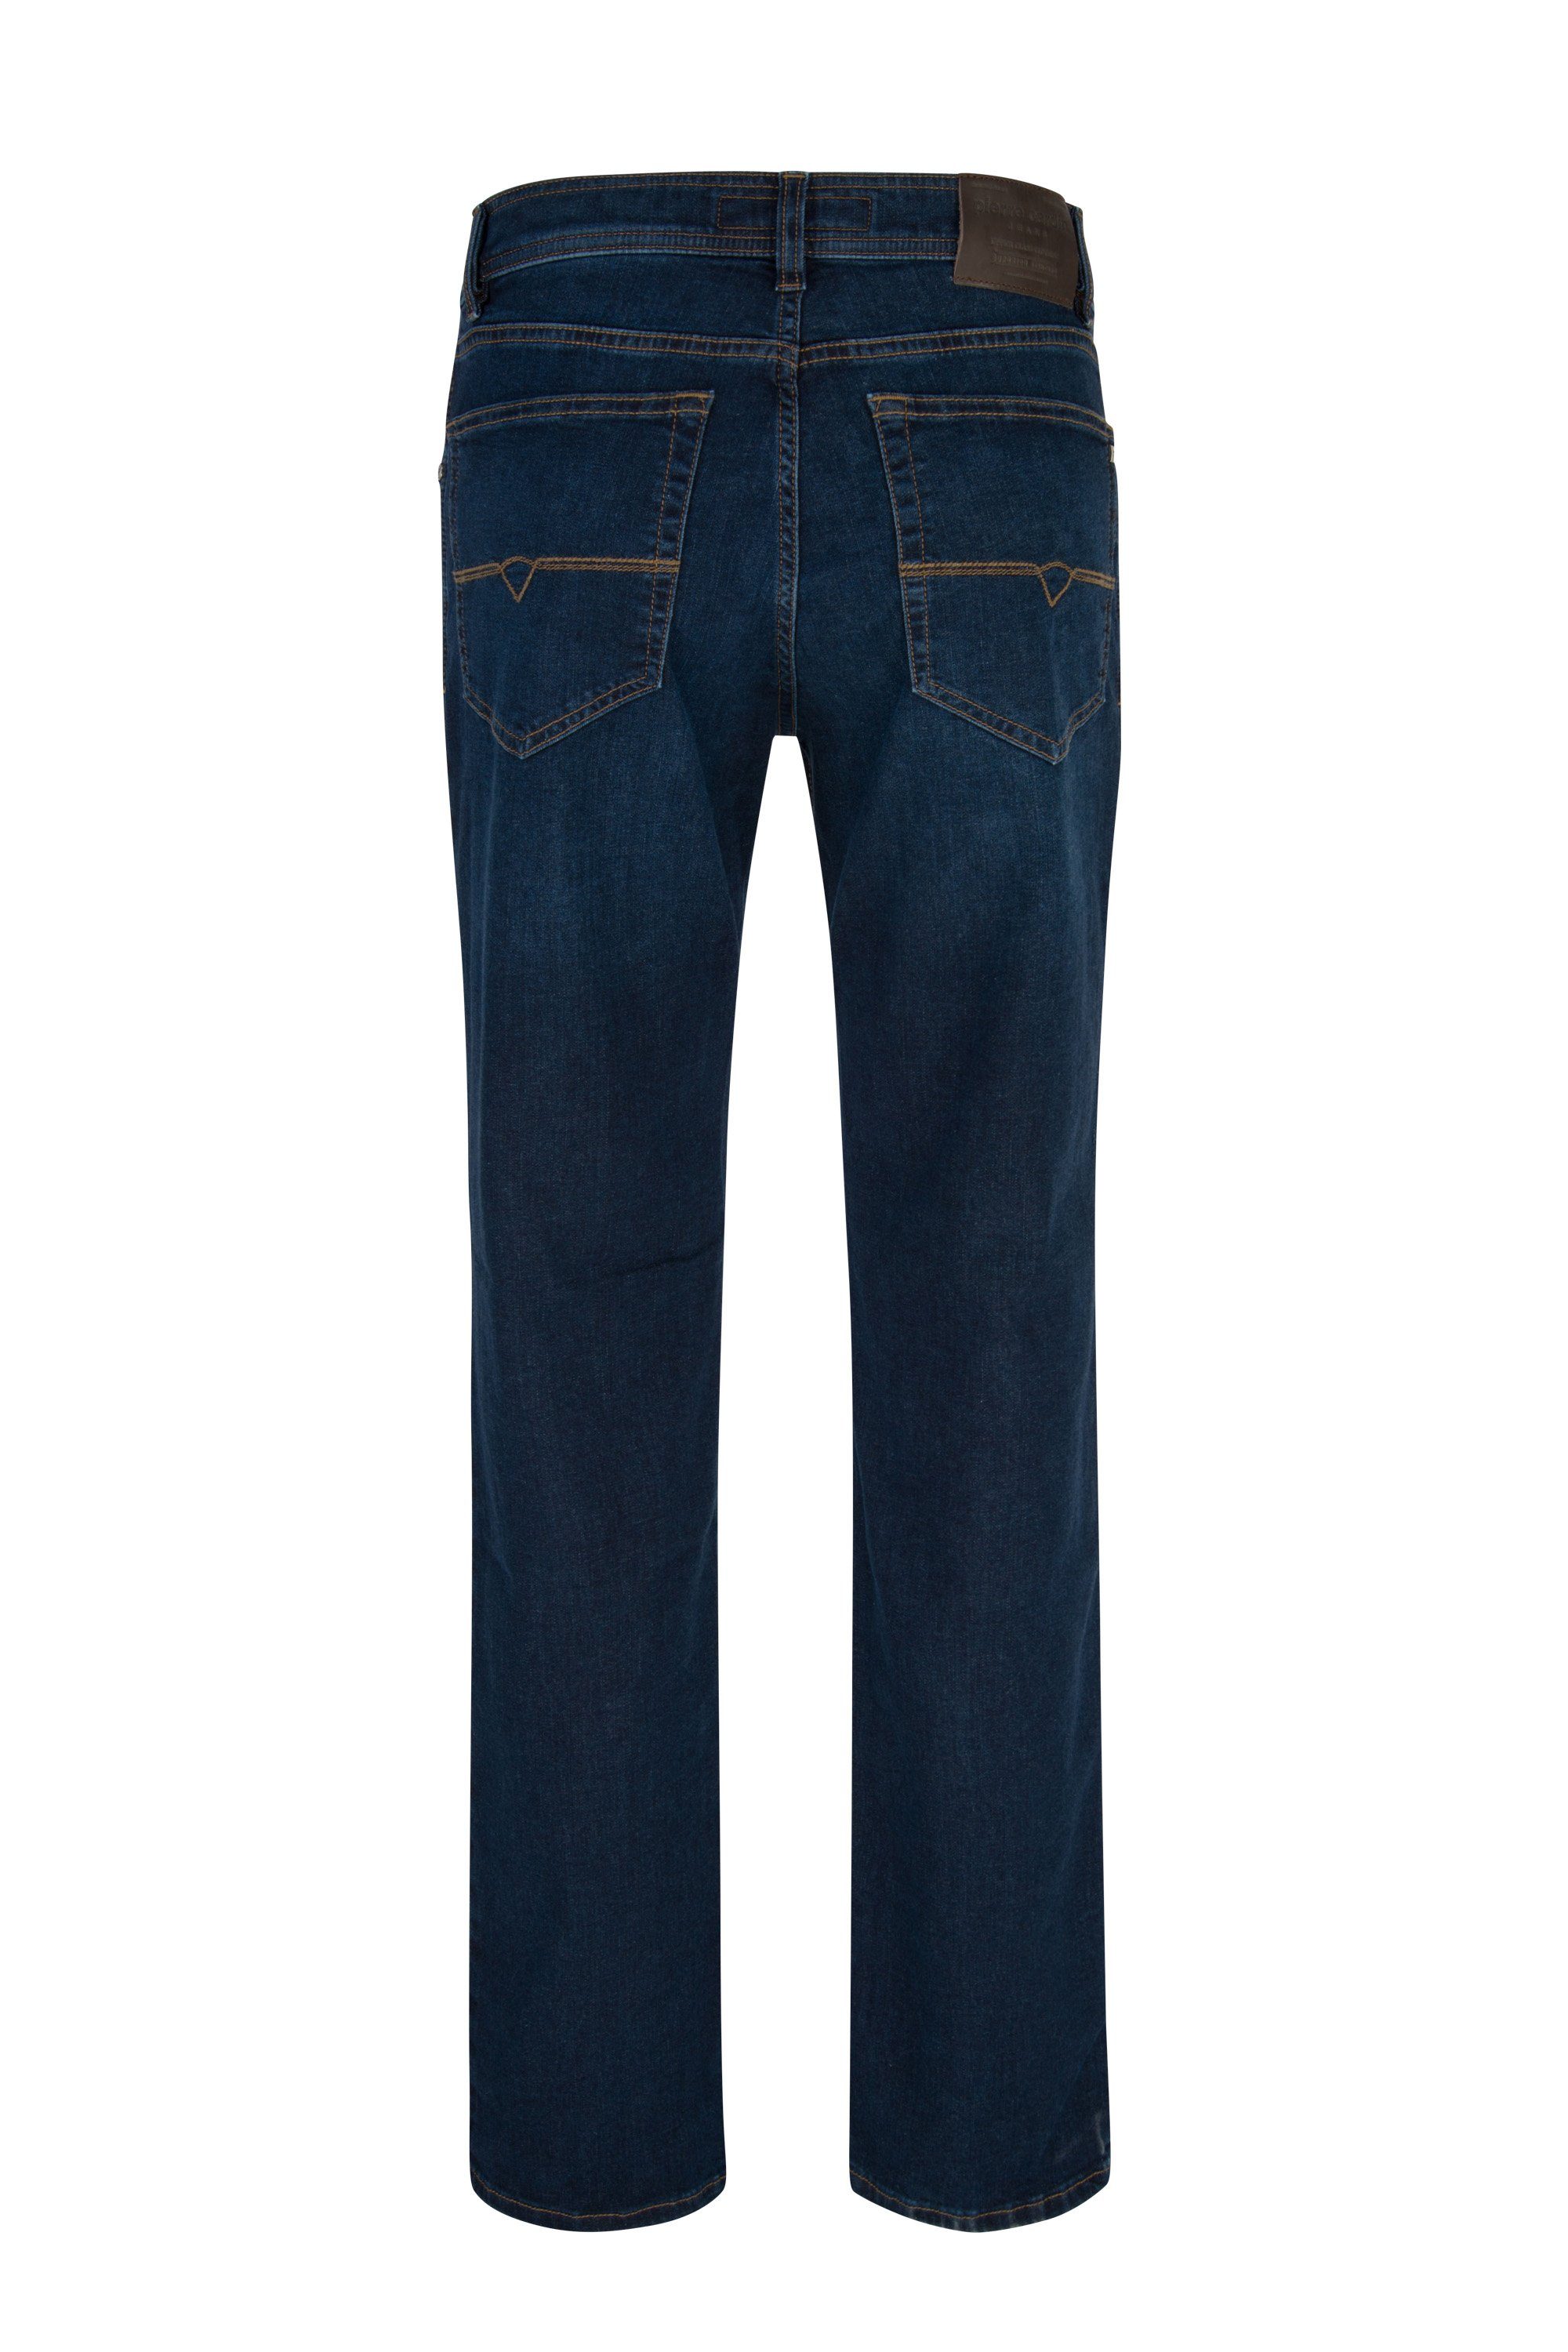 CARDIN PIERRE rinsed Pierre deep blue DIJON 5-Pocket-Jeans Cardin 7301.02 3231